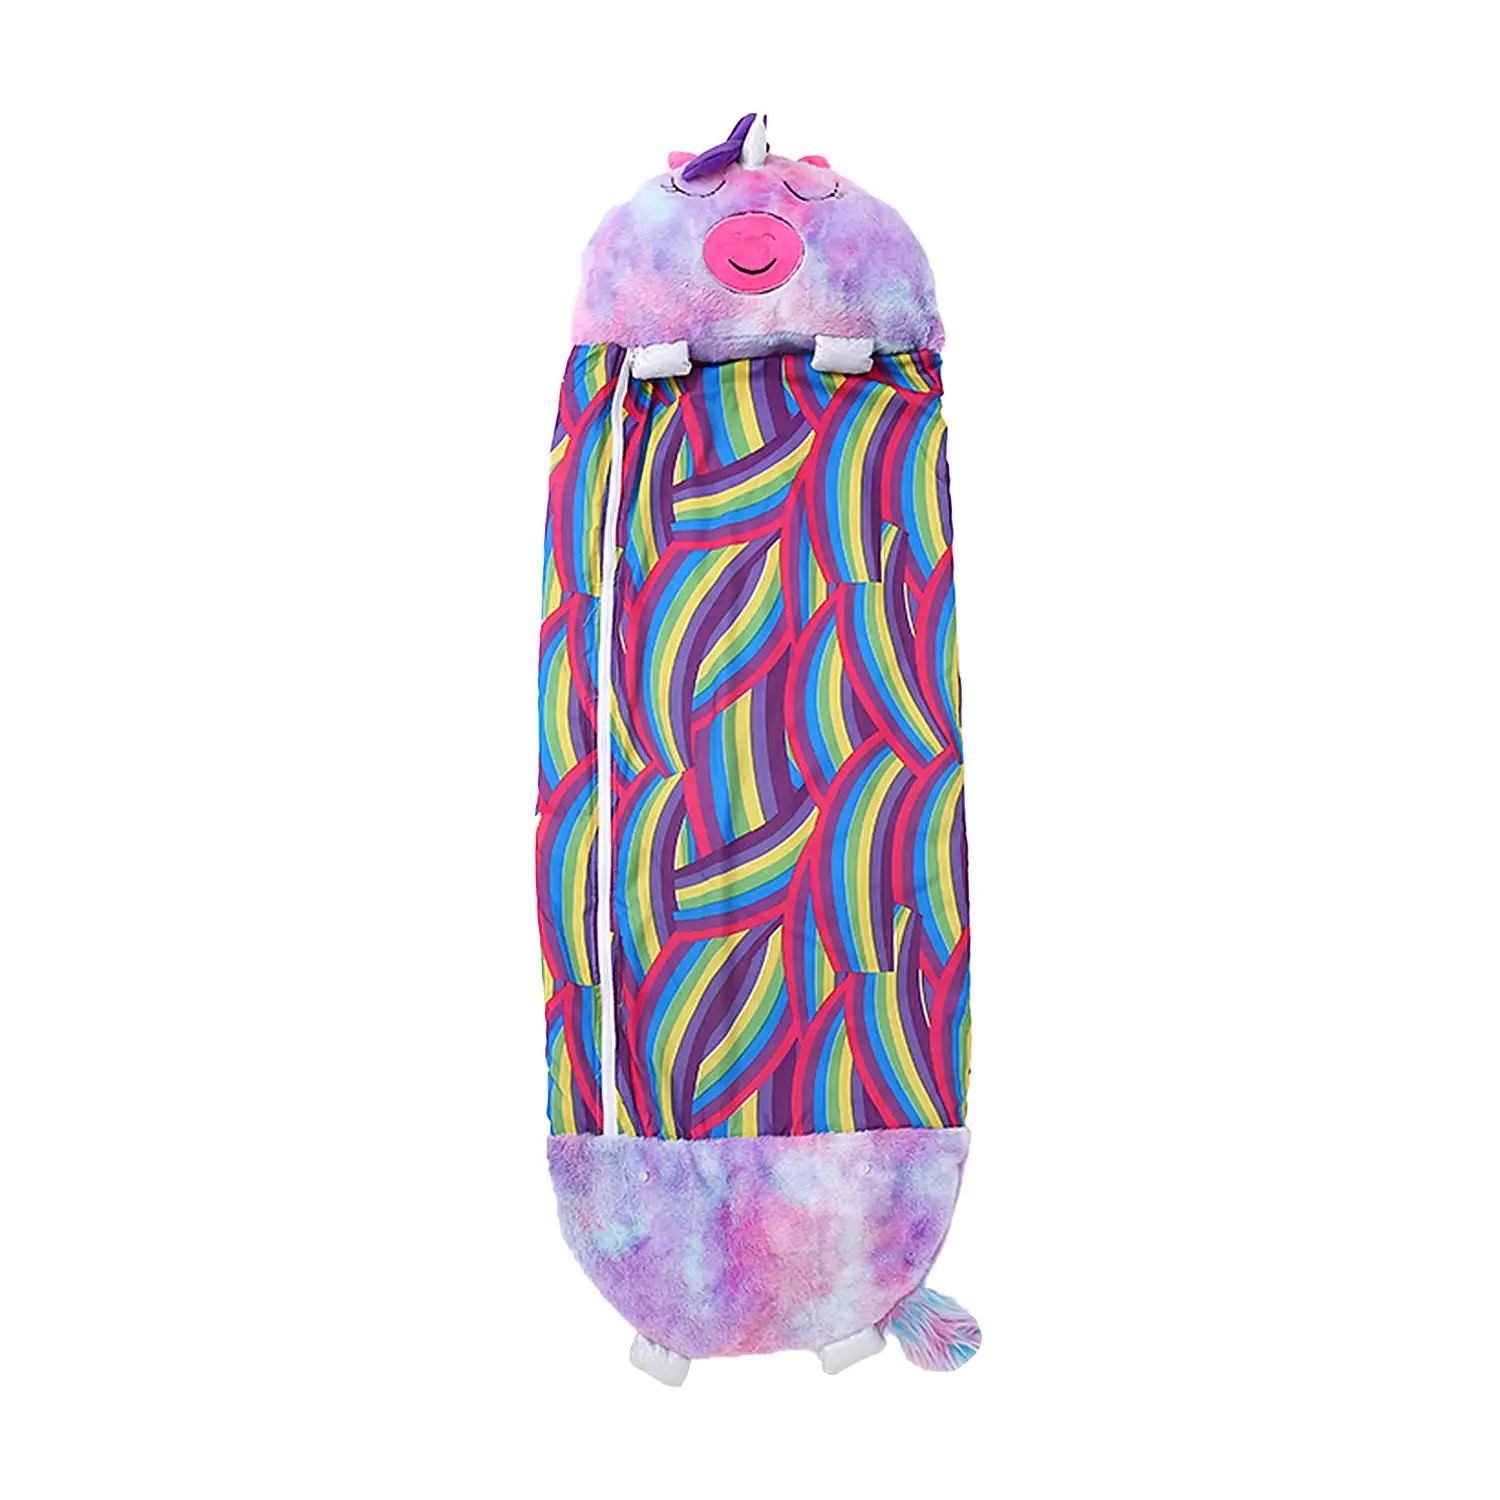 Saco de dormir convertible en almohada, para niños, Unicornio Multicolor Violeta. Tacto peluche. Mediano / M: 160x60cm.